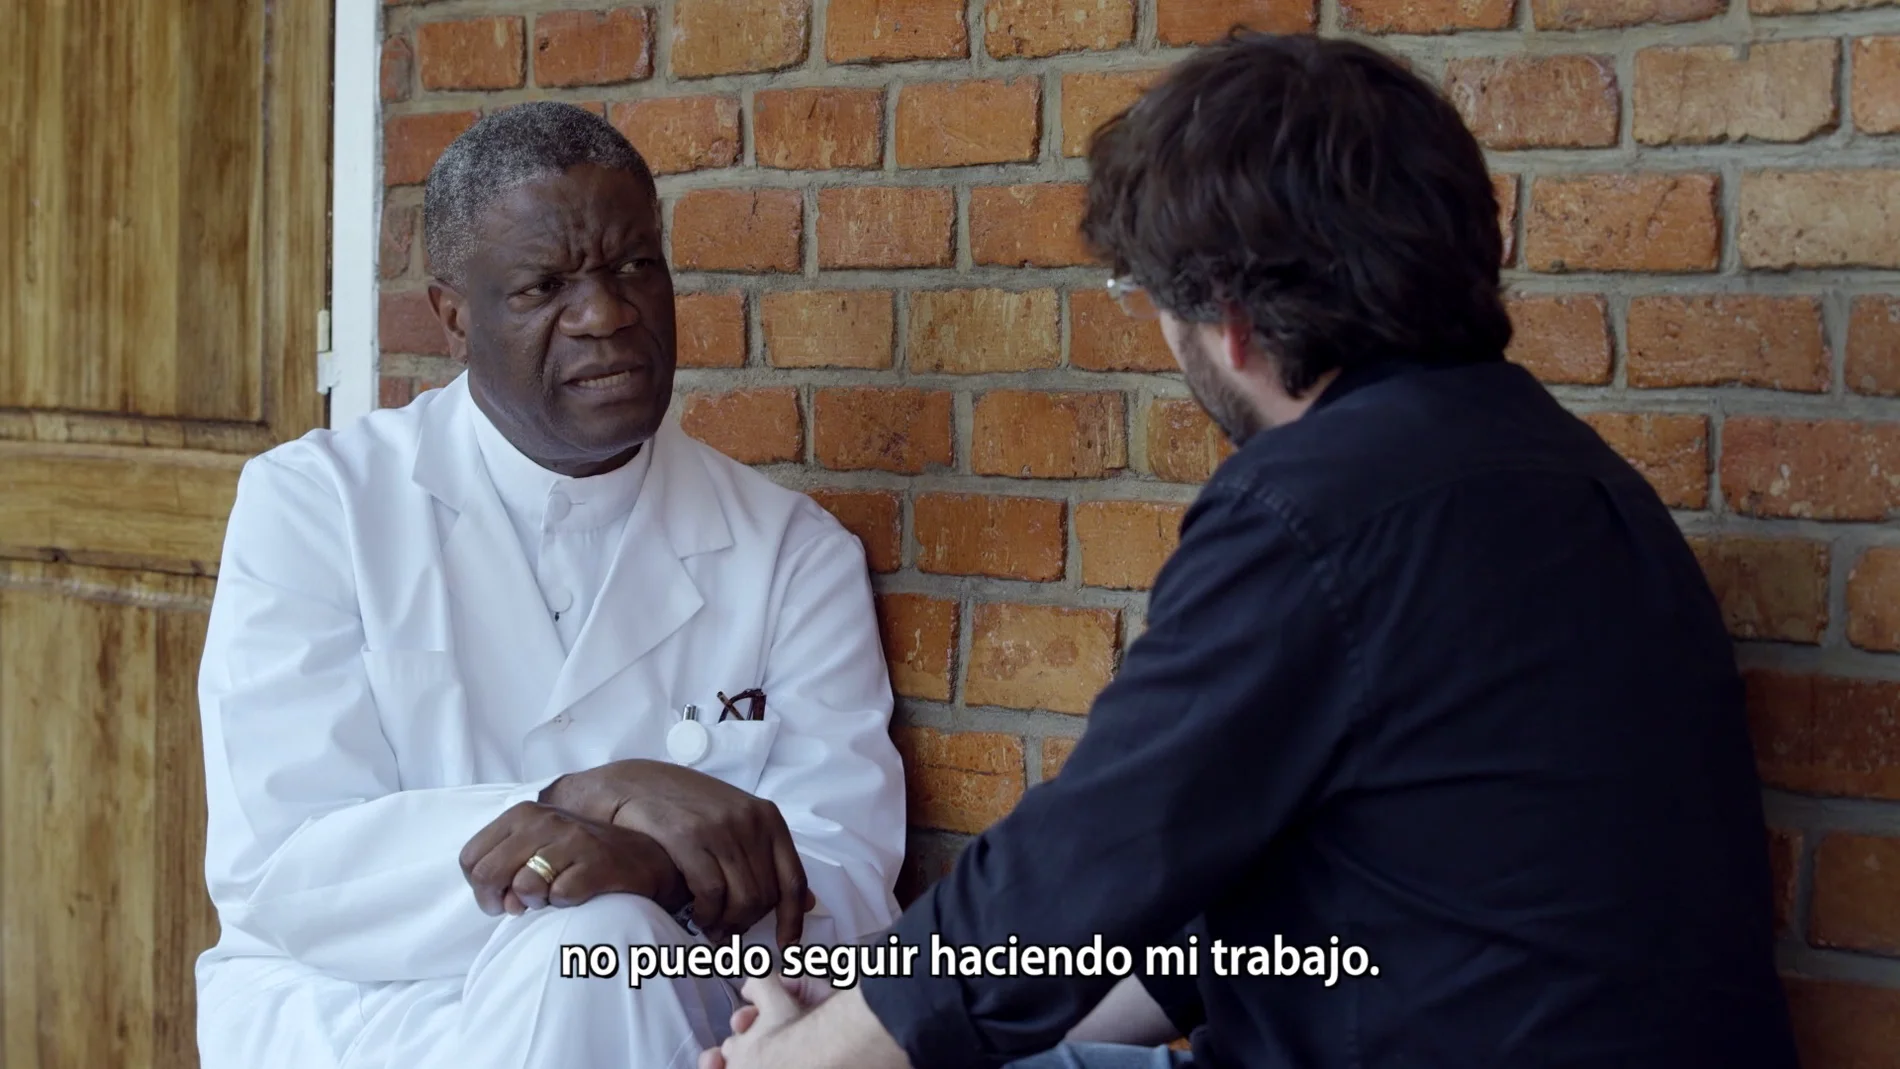 El  director del Hospital Pazi, Denis Mukwege, y Jordi Évole